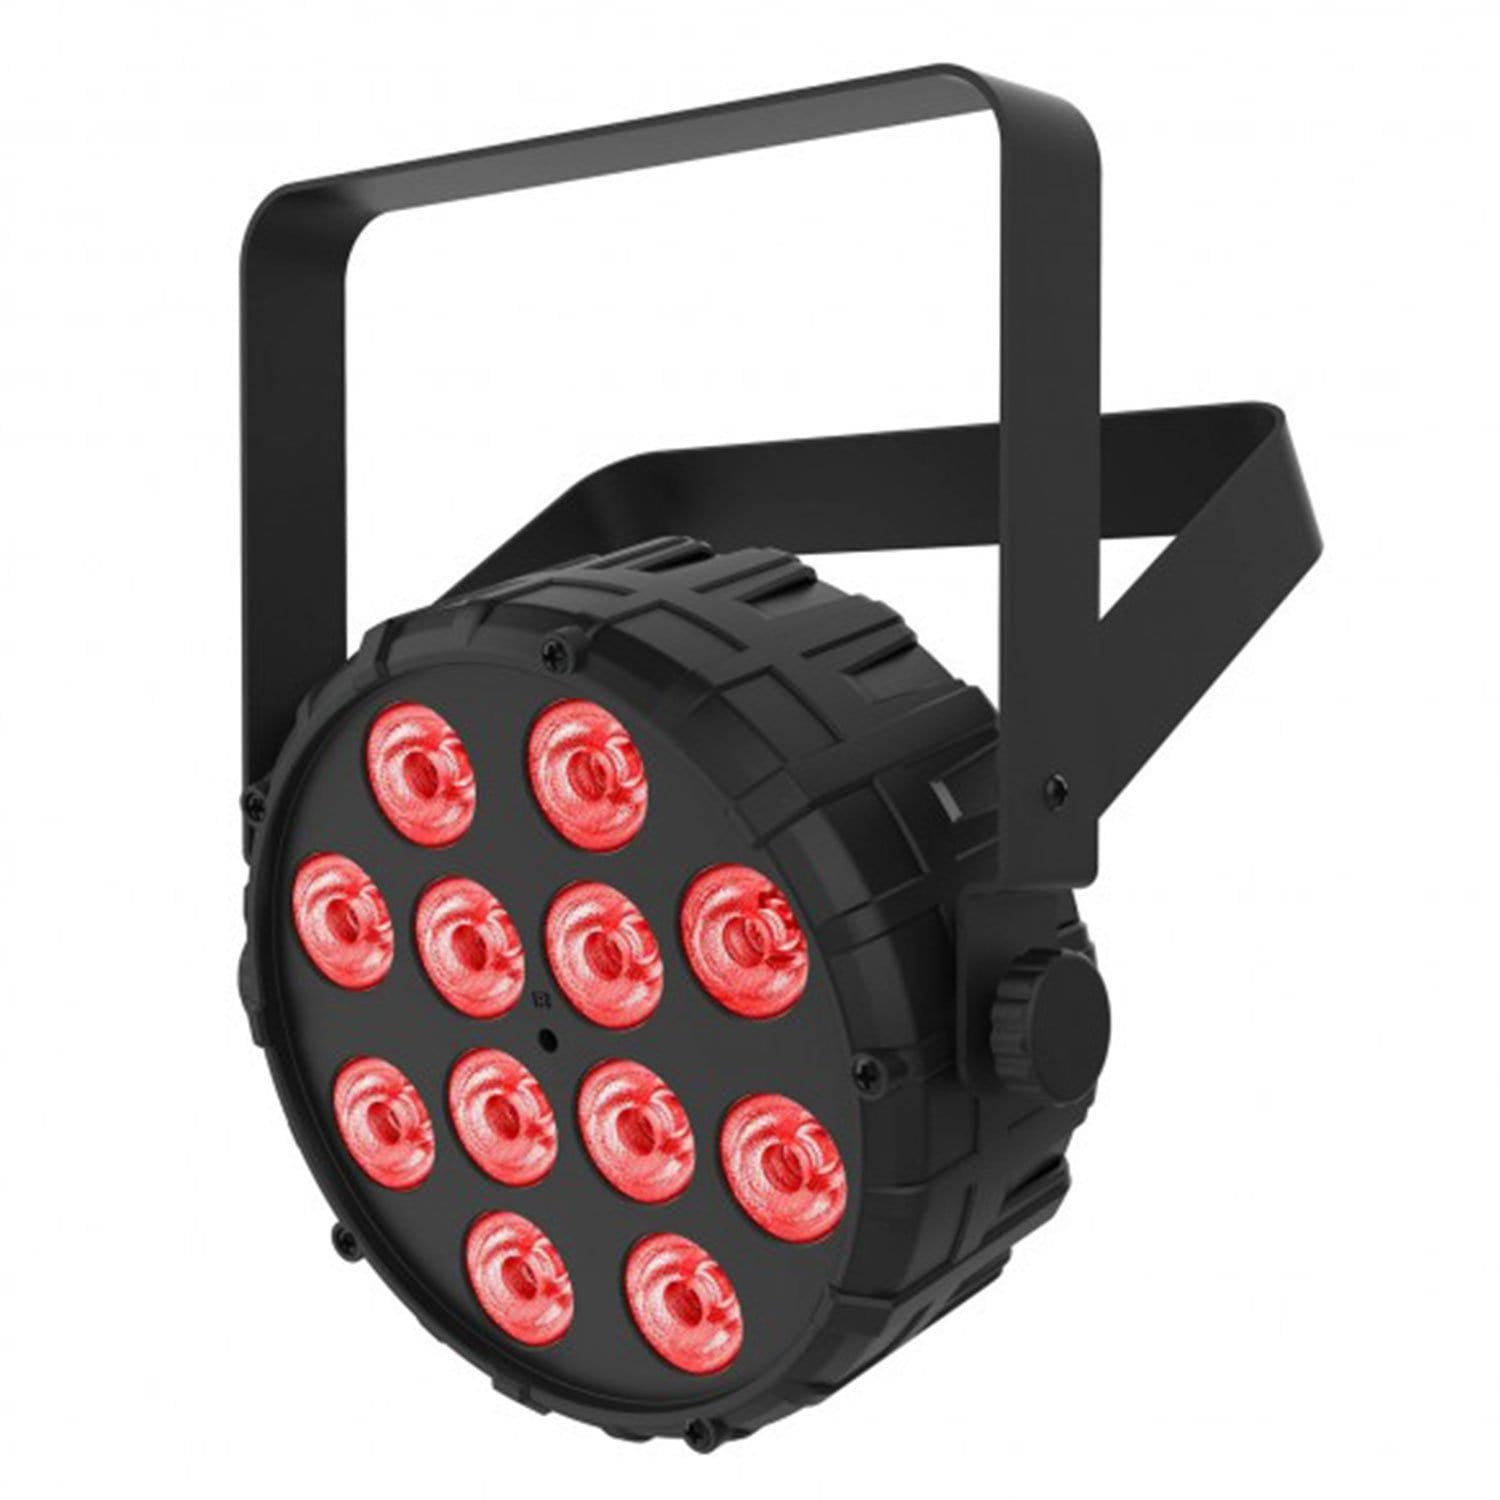 Chauvet SlimPAR T12 BT LED Wash Light 4-Pack with Gator Bag - PSSL ProSound and Stage Lighting